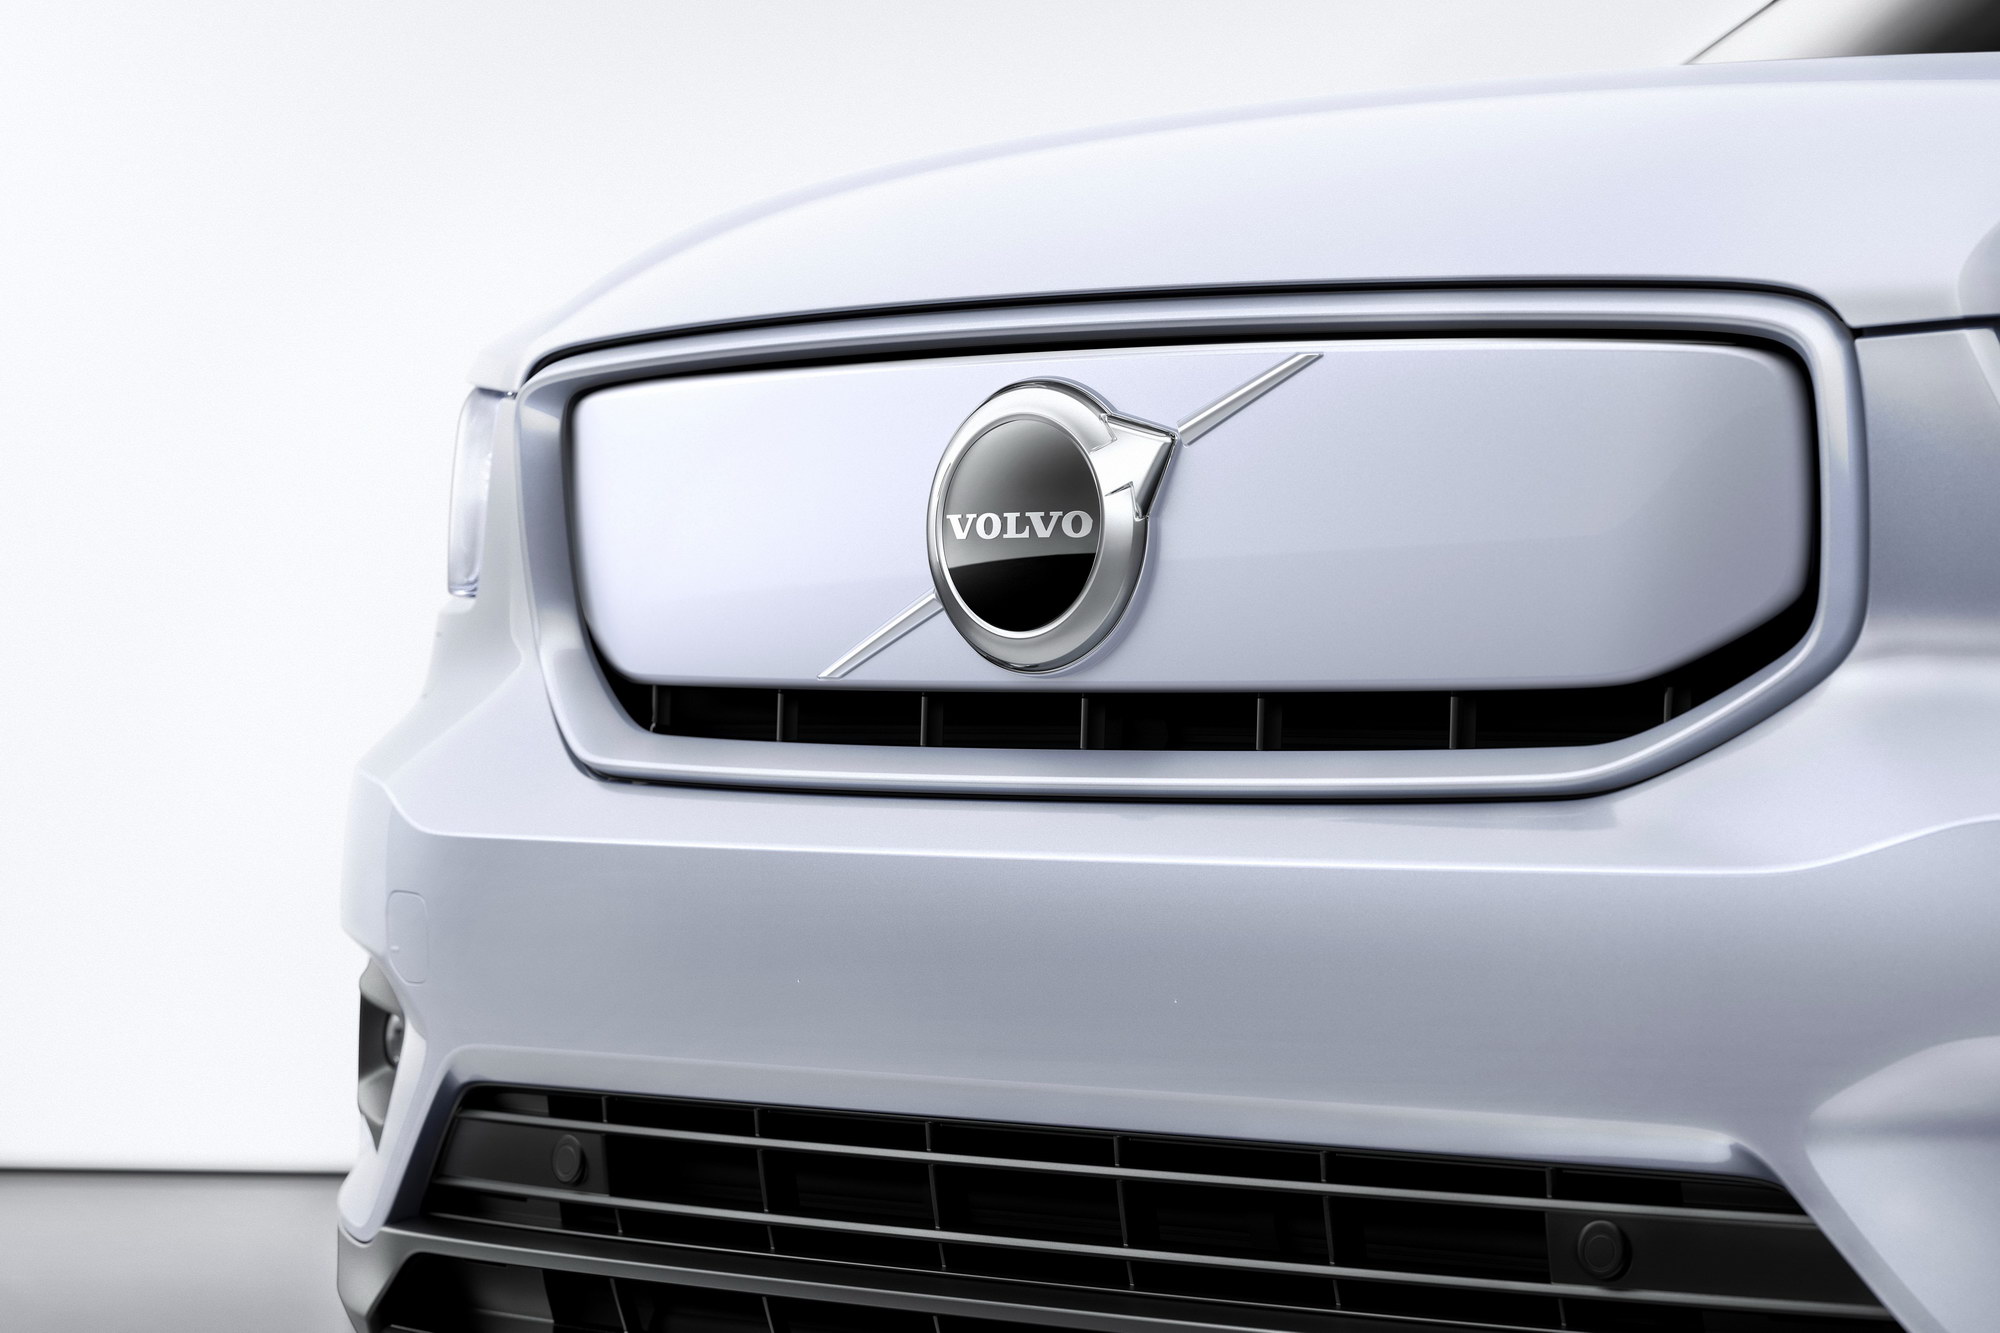 Volvo skrotar laddhybriden – blir elbilsmärke